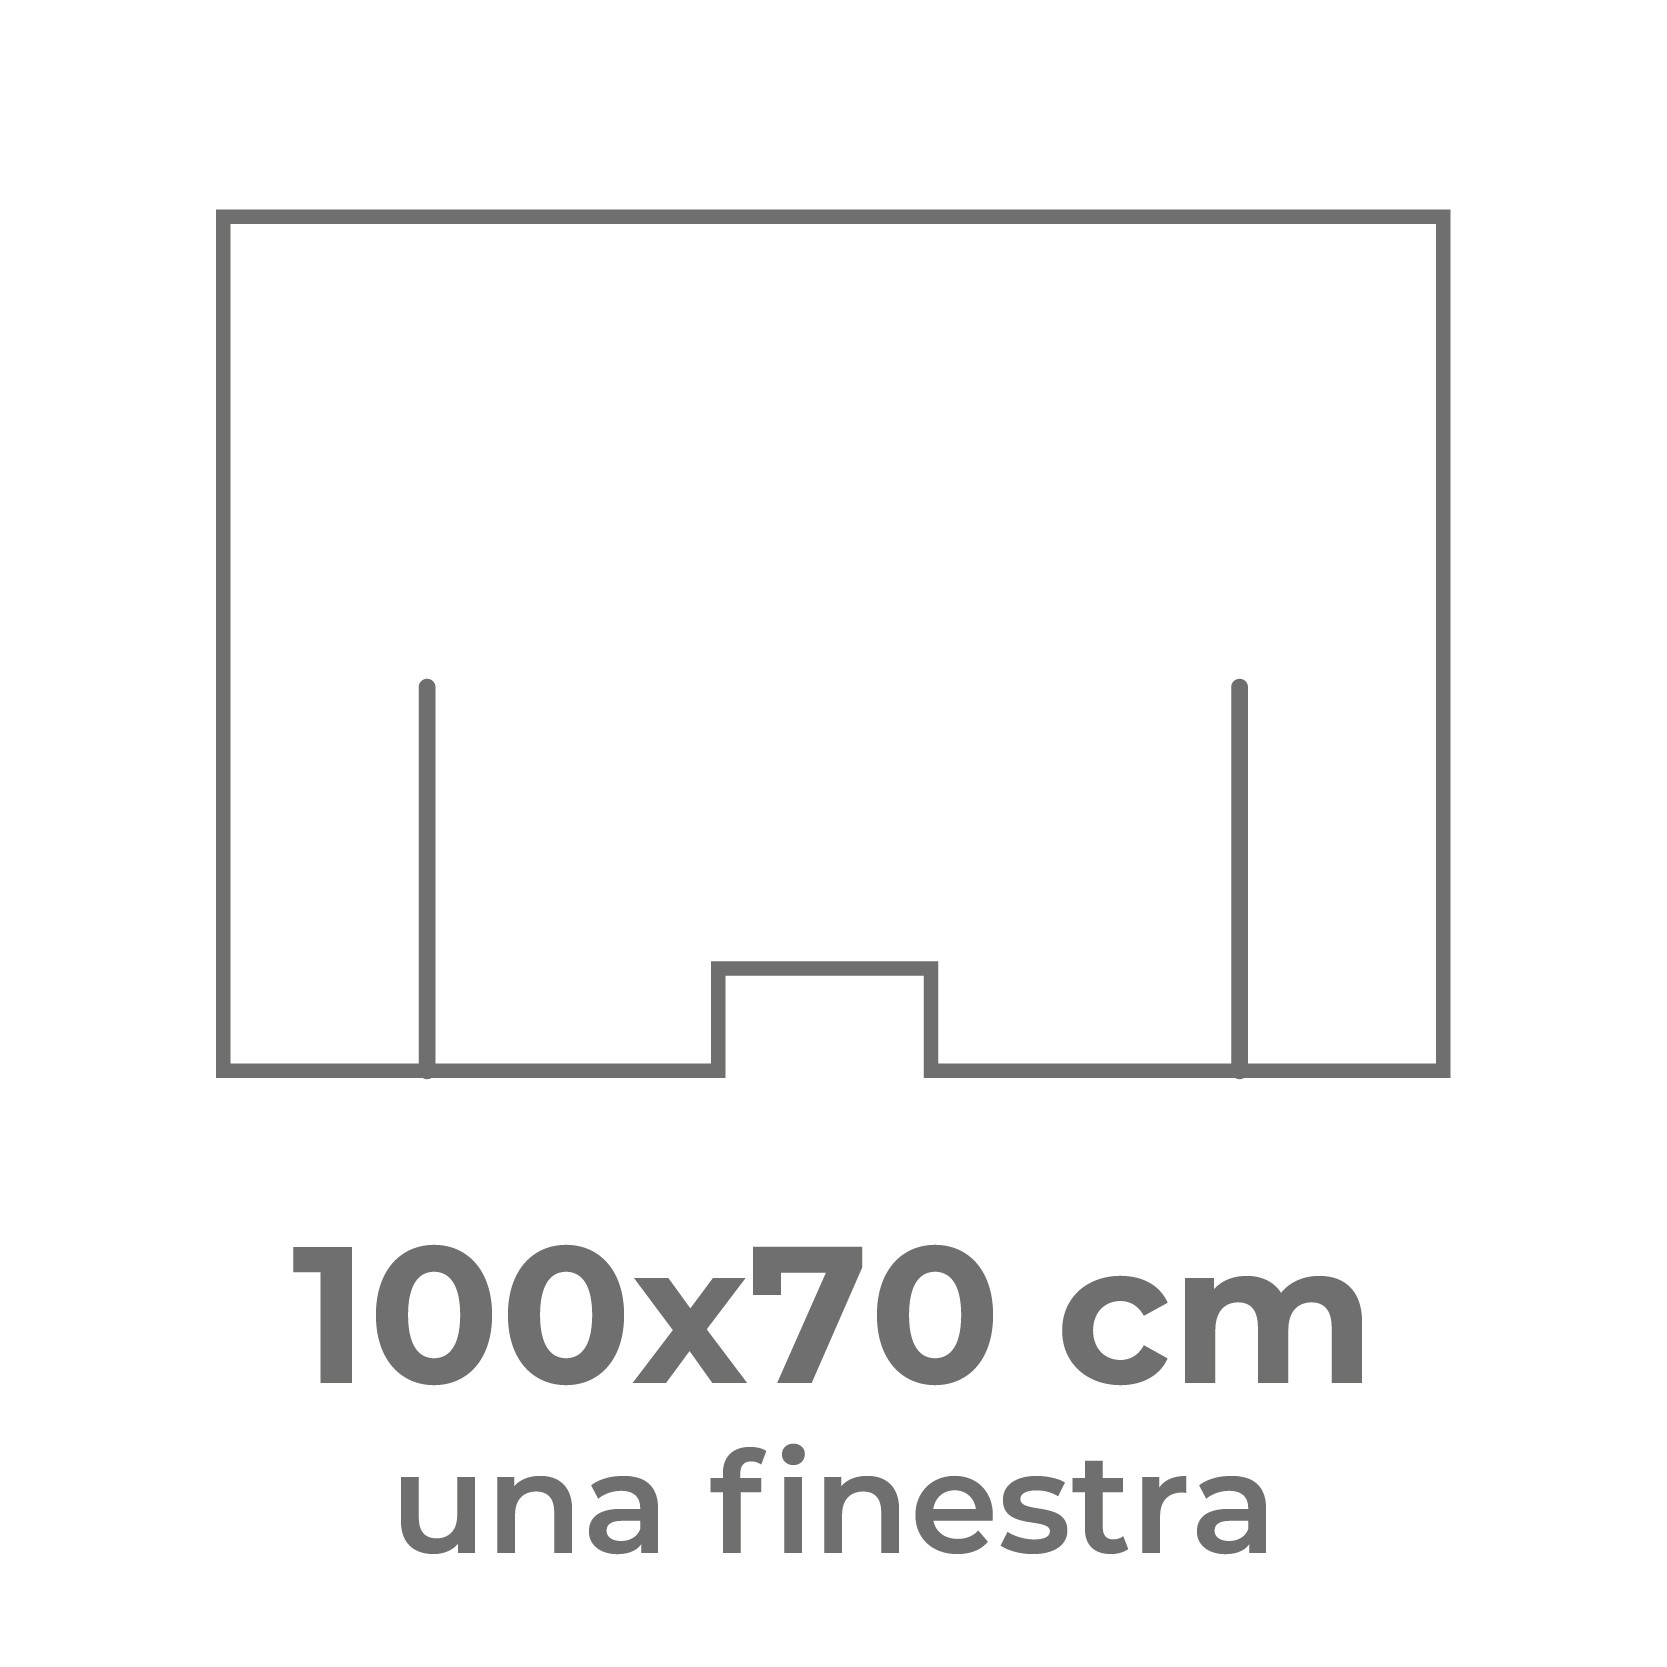 100x70 cm (una finestra)